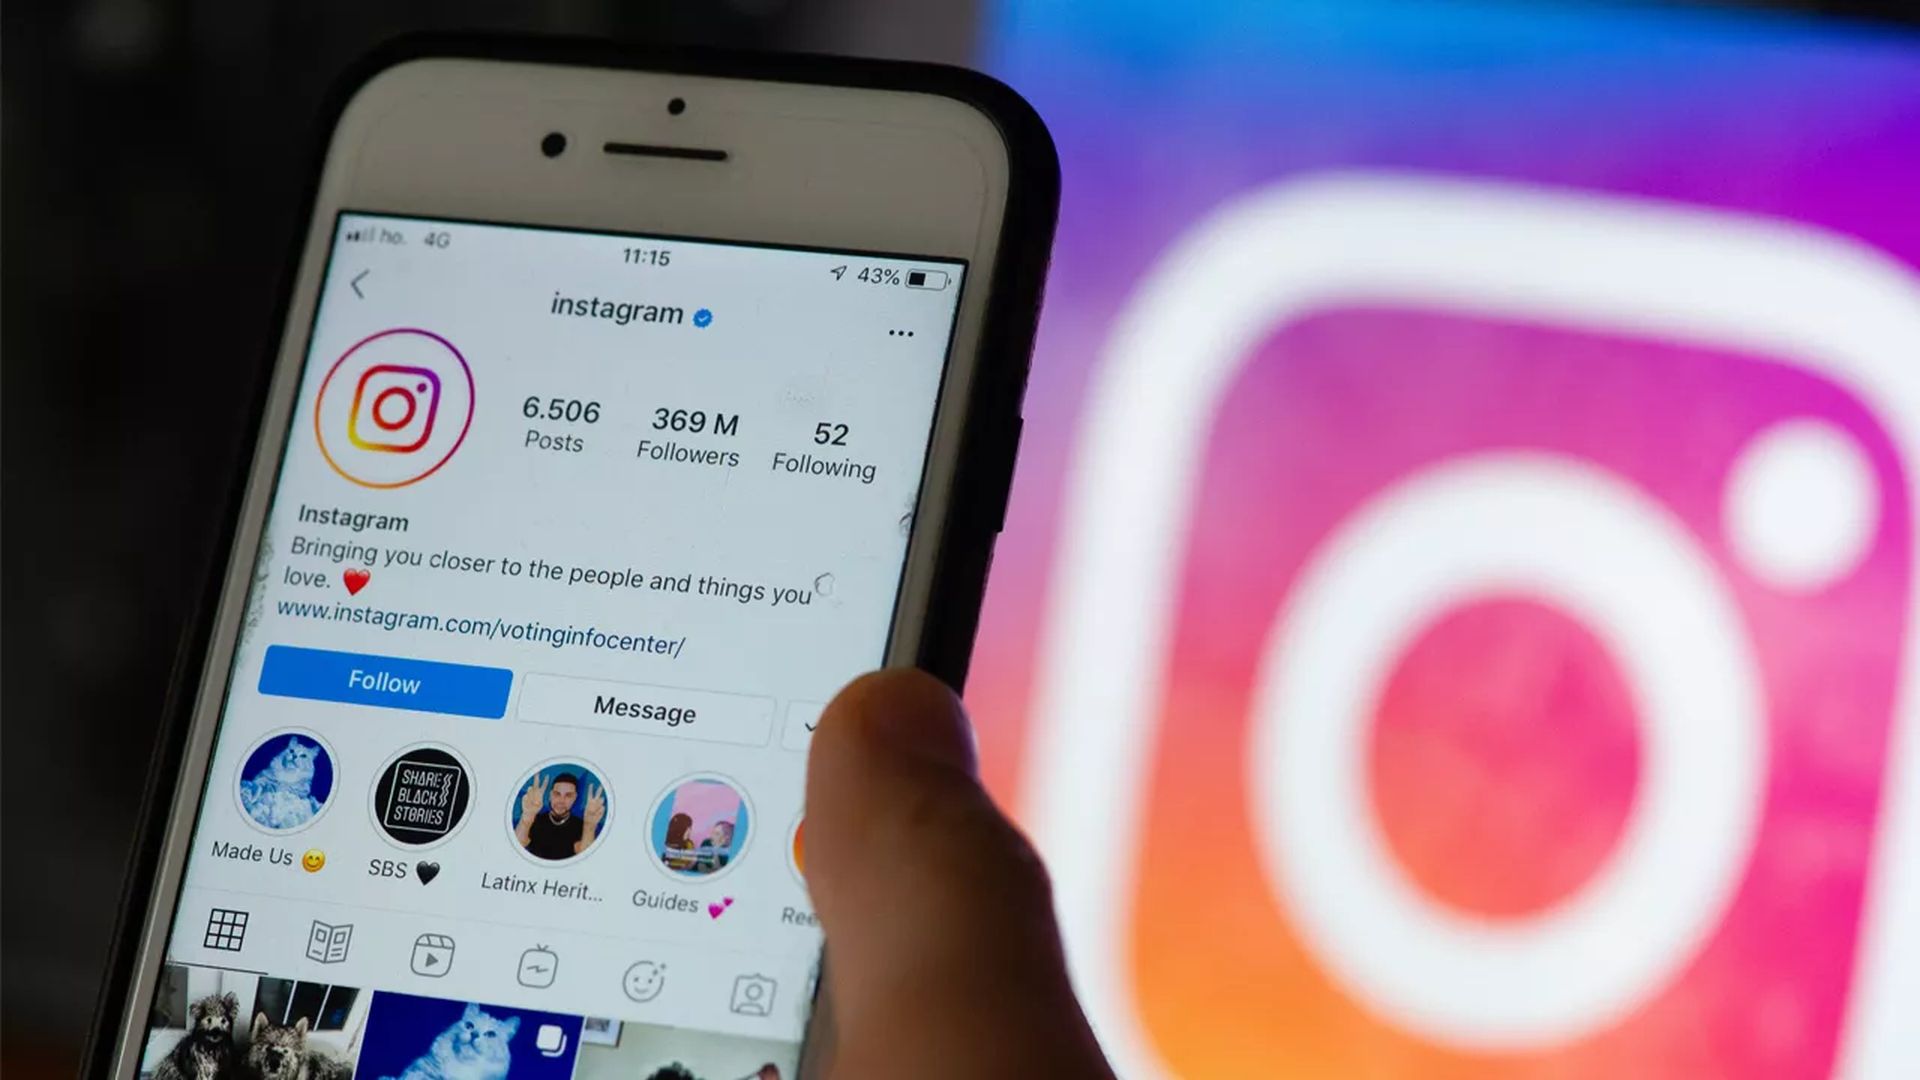 Dans cet article, nous allons voir comment publier des GIF sur Instagram, afin que vous puissiez partager vos GIF préférés avec vos abonnés.